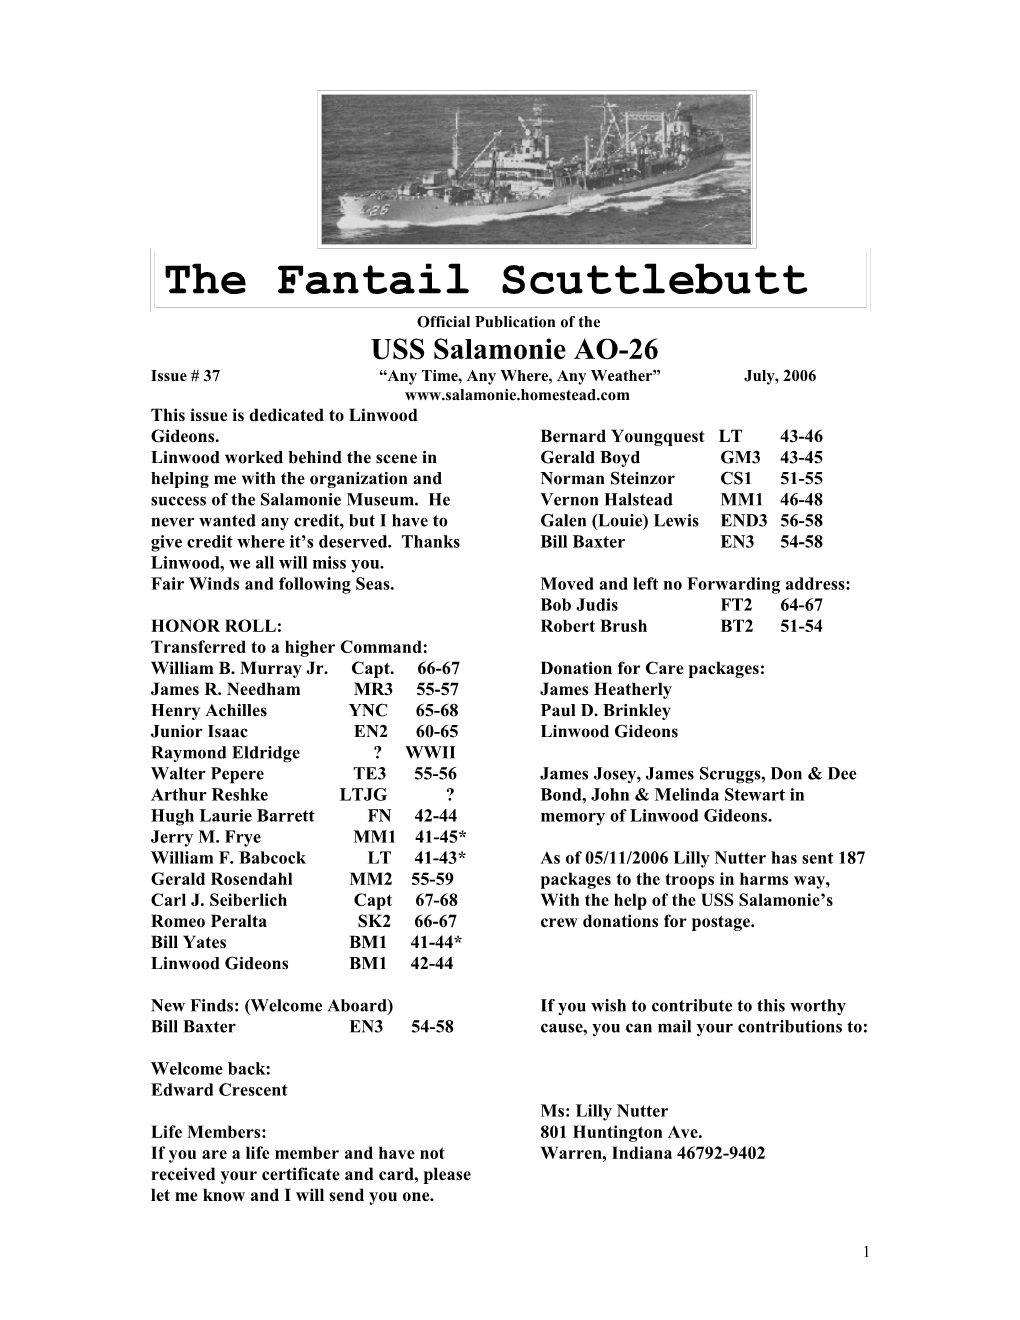 The Fantail Scuttlebutt